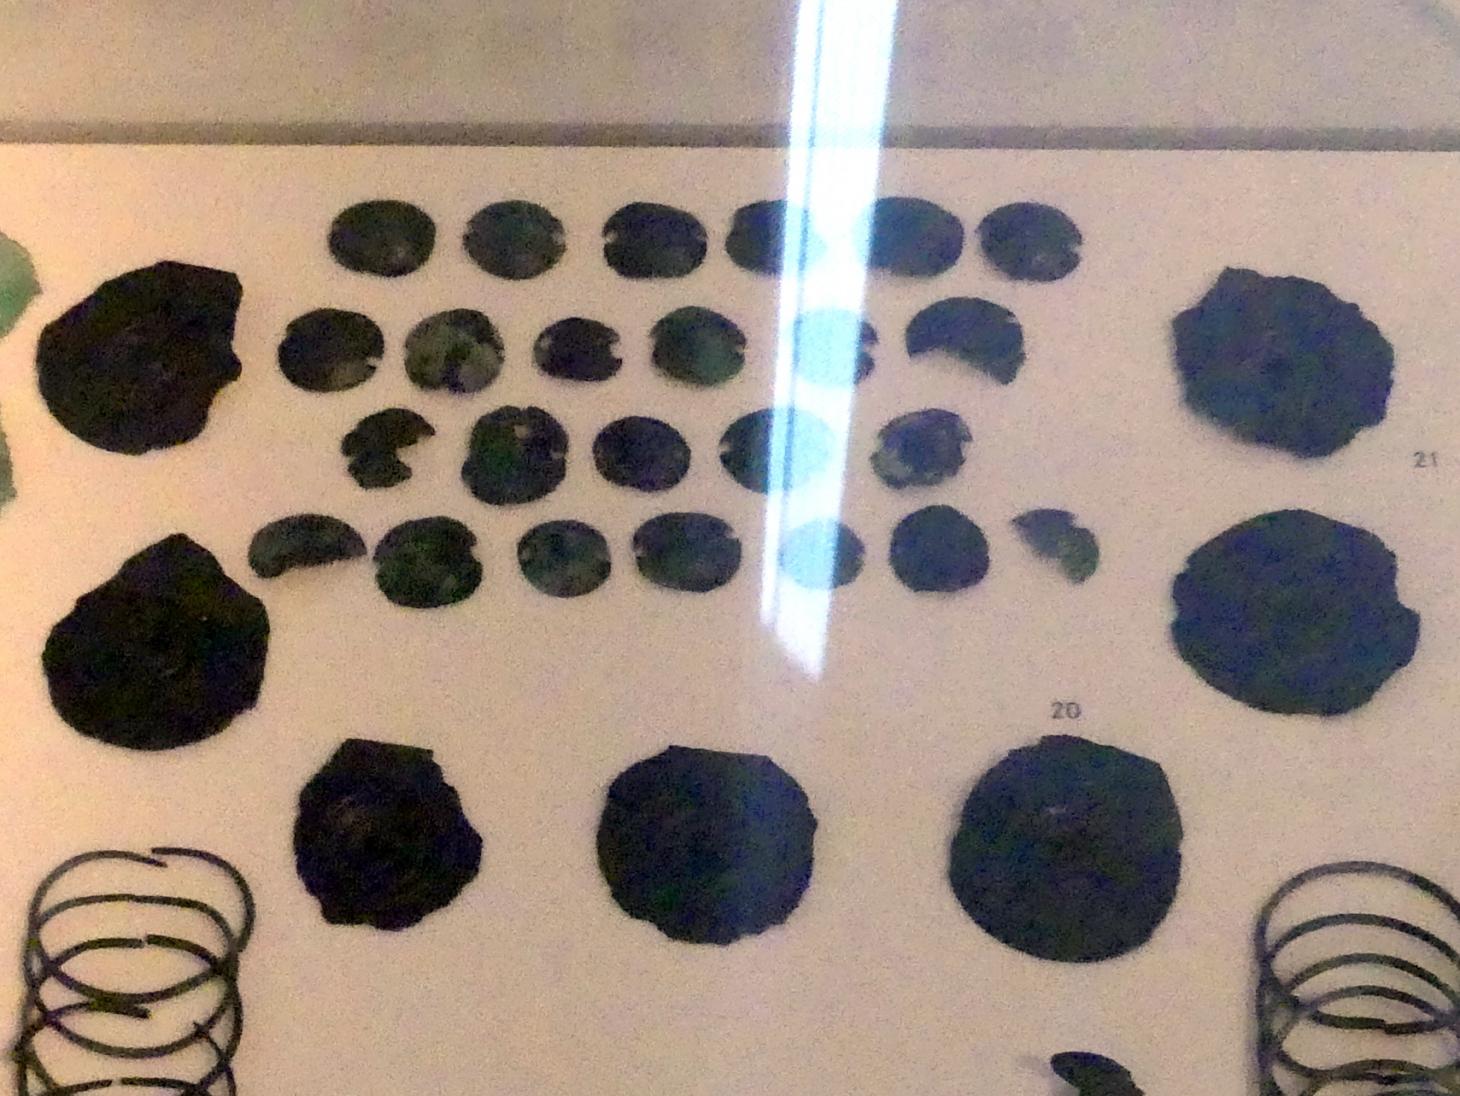 Stachelscheiben, Mittlere Bronzezeit, 3000 - 1300 v. Chr., 1600 - 1300 v. Chr.